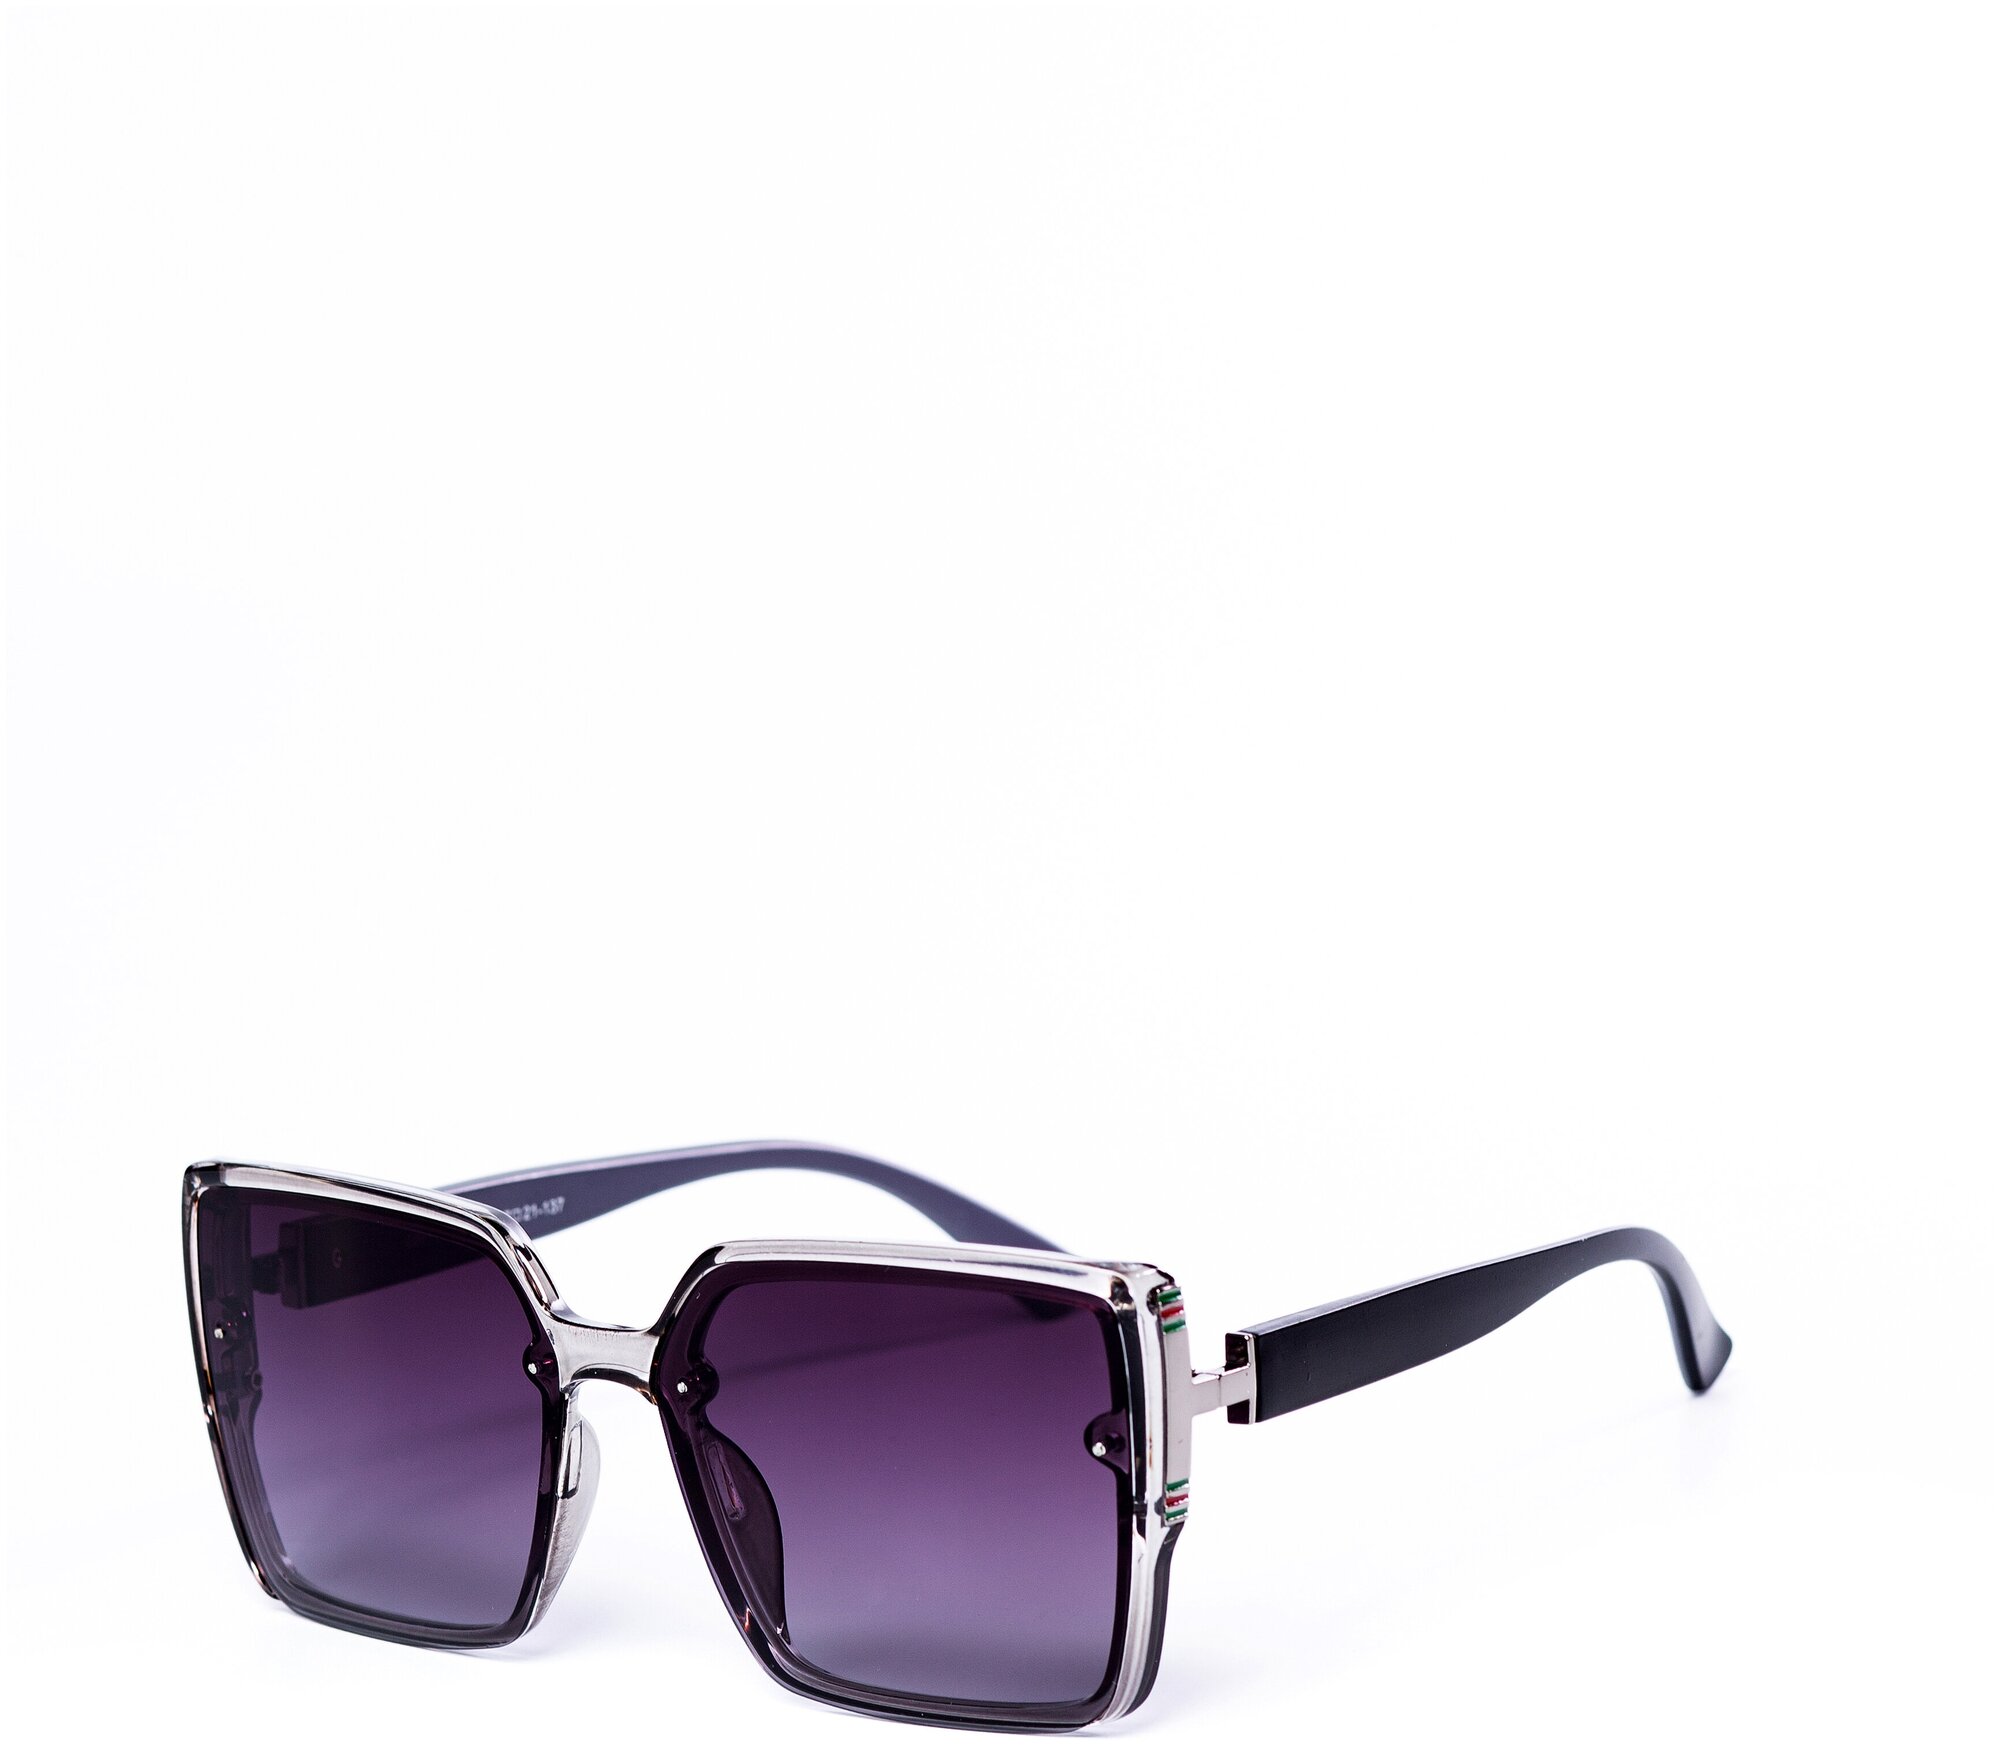 Солнцезащитные очки женские / Оправа квадратная / Стильные очки / Ультрафиолетовый фильтр / Защита UV400 / Чехол в подарок /Светлые очки 200422560